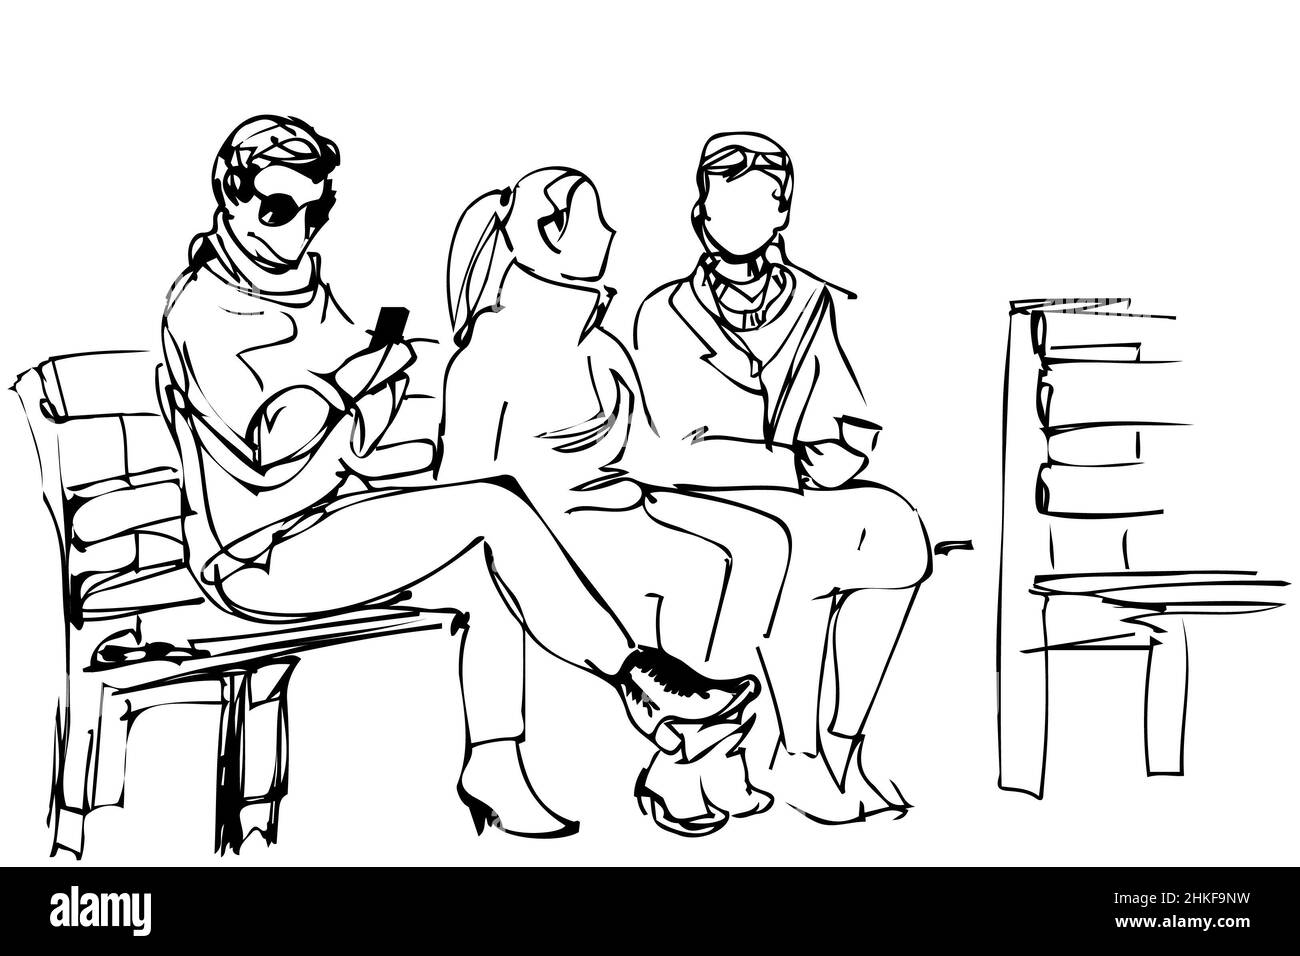 Dessin vectoriel noir et blanc d'amis assis sur un banc Banque D'Images